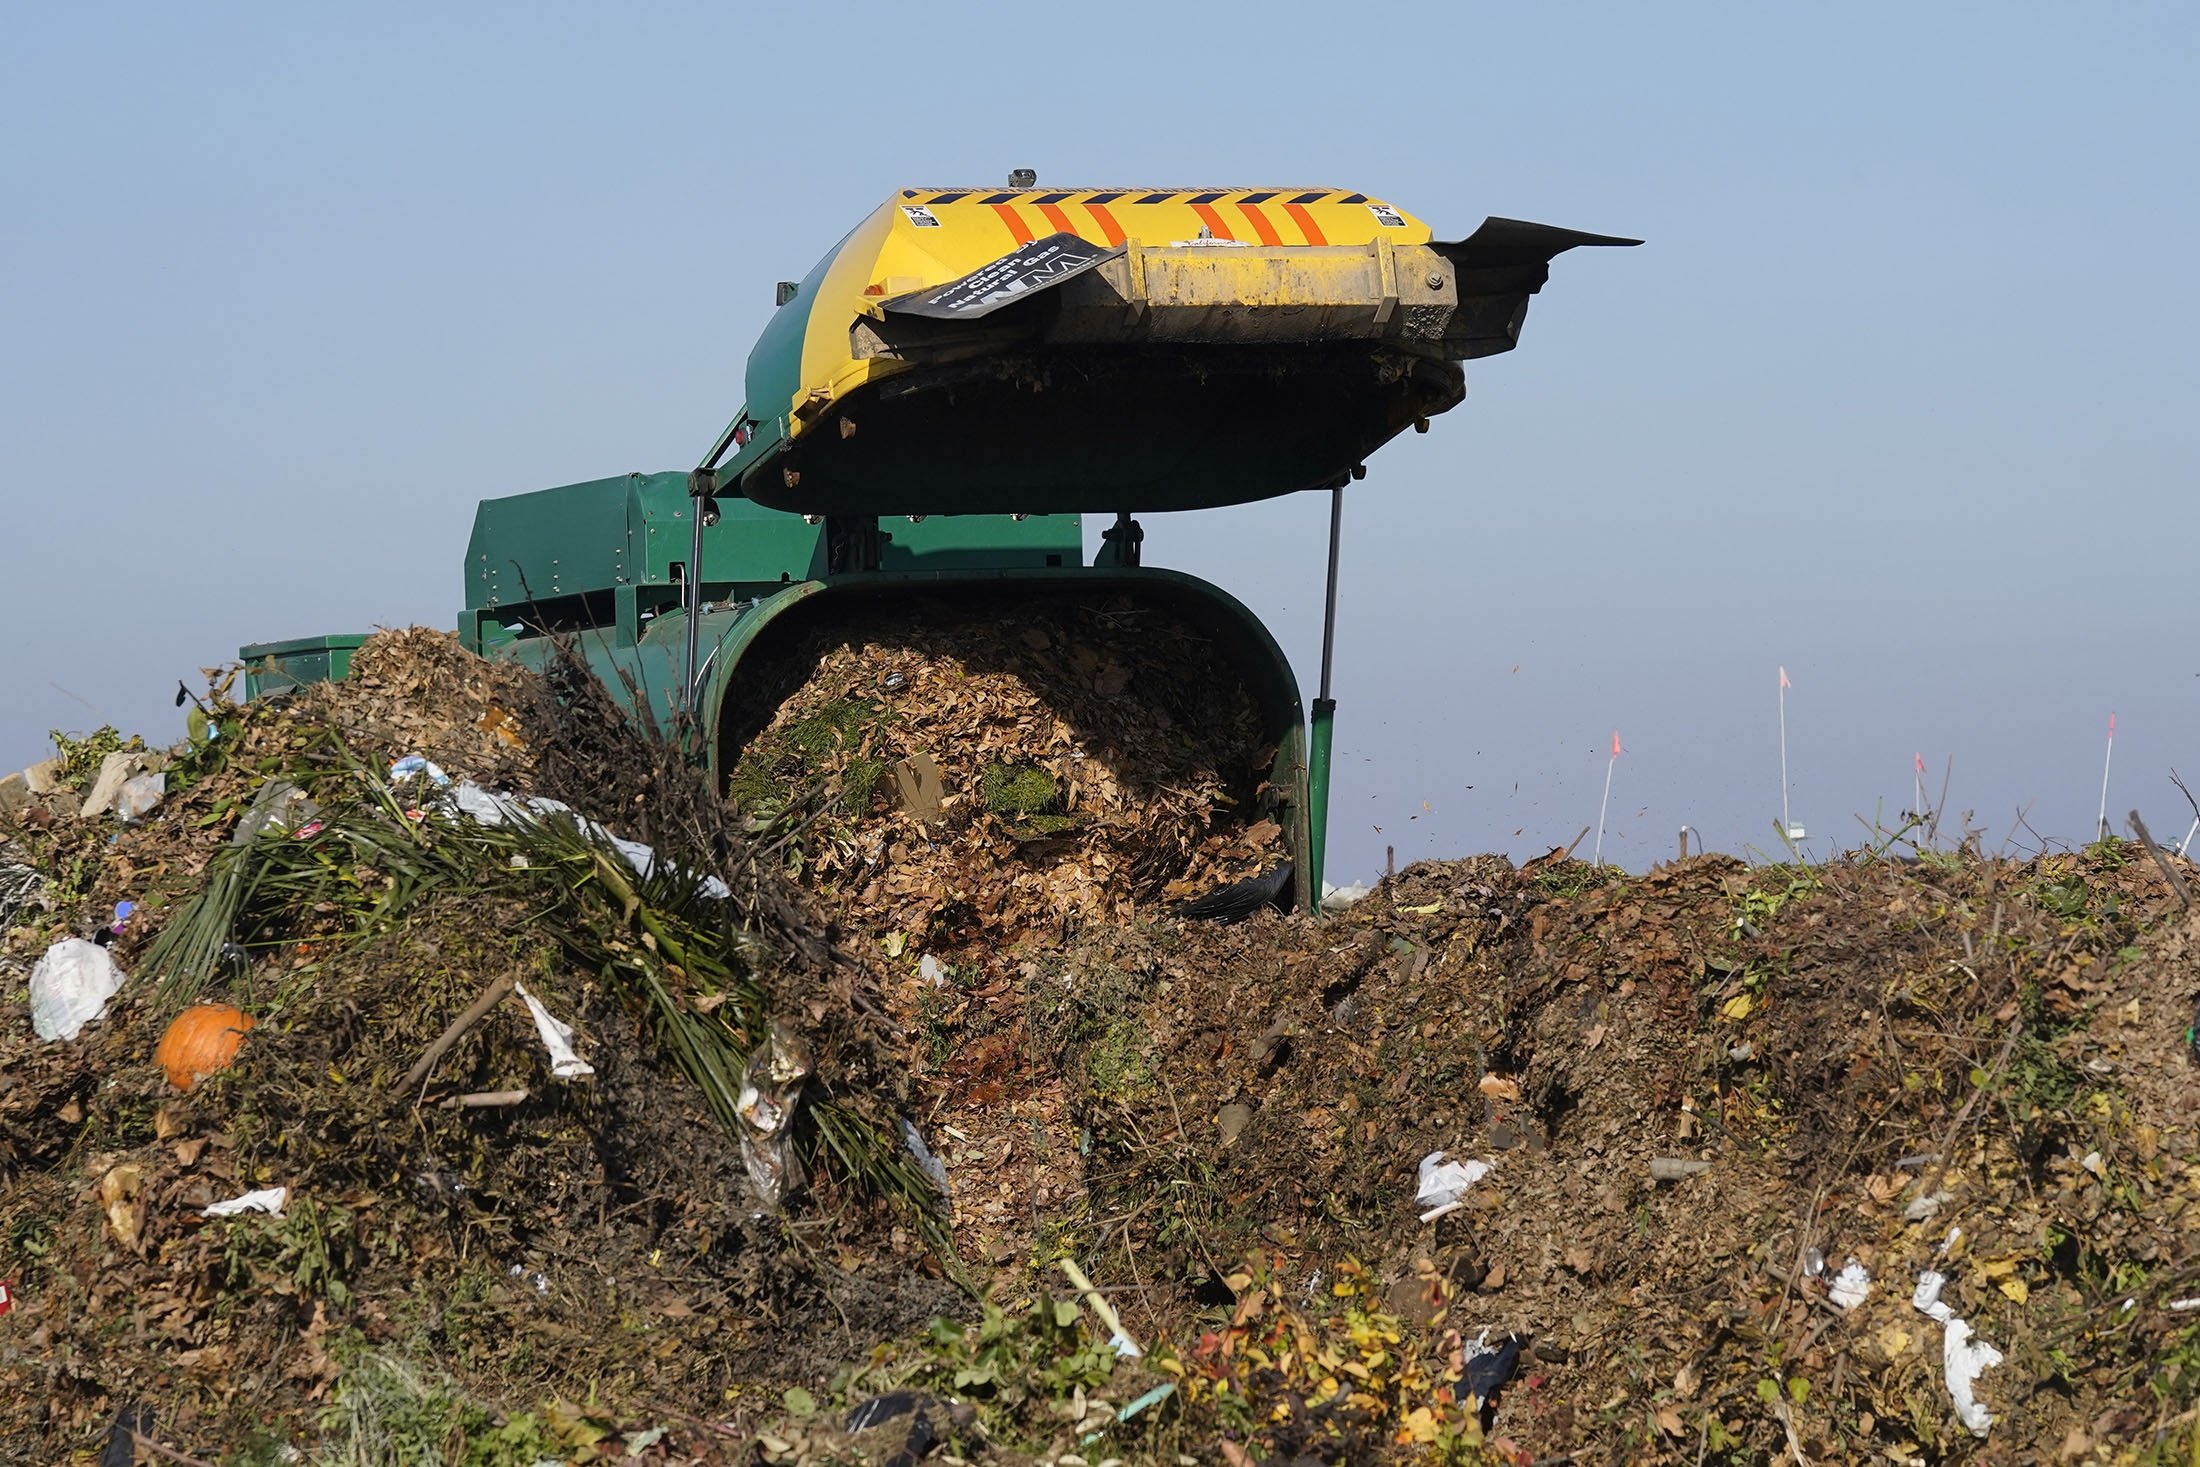 Bir kamyon, Woodland, California, ABD'deki Anaerobik Kompost Tesisi'nde kompostlama için kullanılacak organik atıkları boşaltıyor, 30 Kasım 2021. (AP Fotoğrafı)